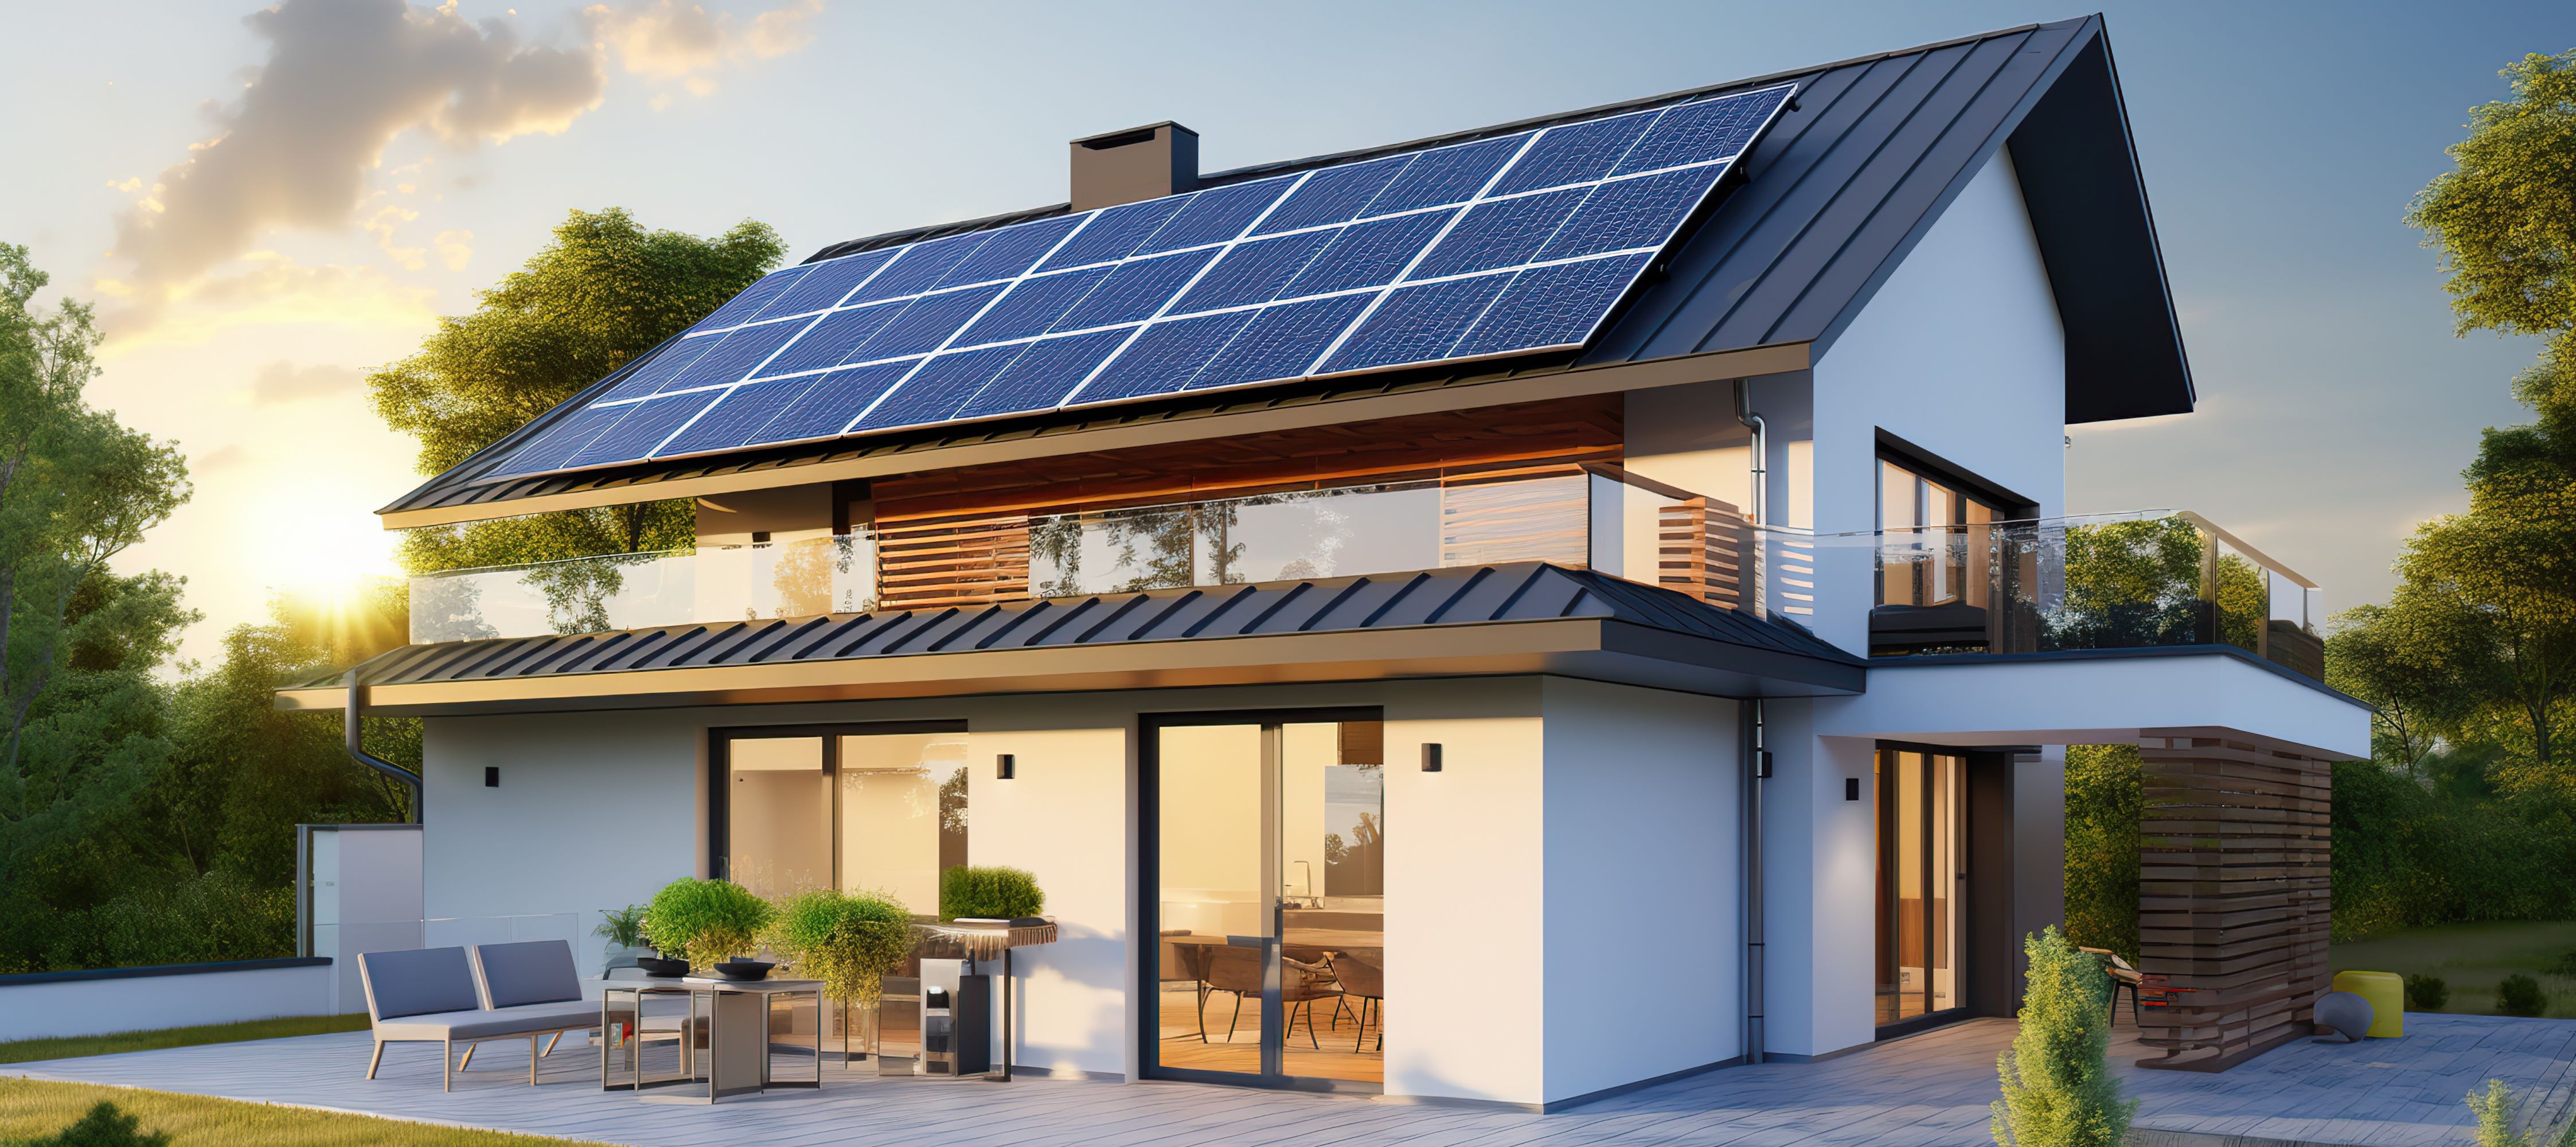 Solar Panels on modern home